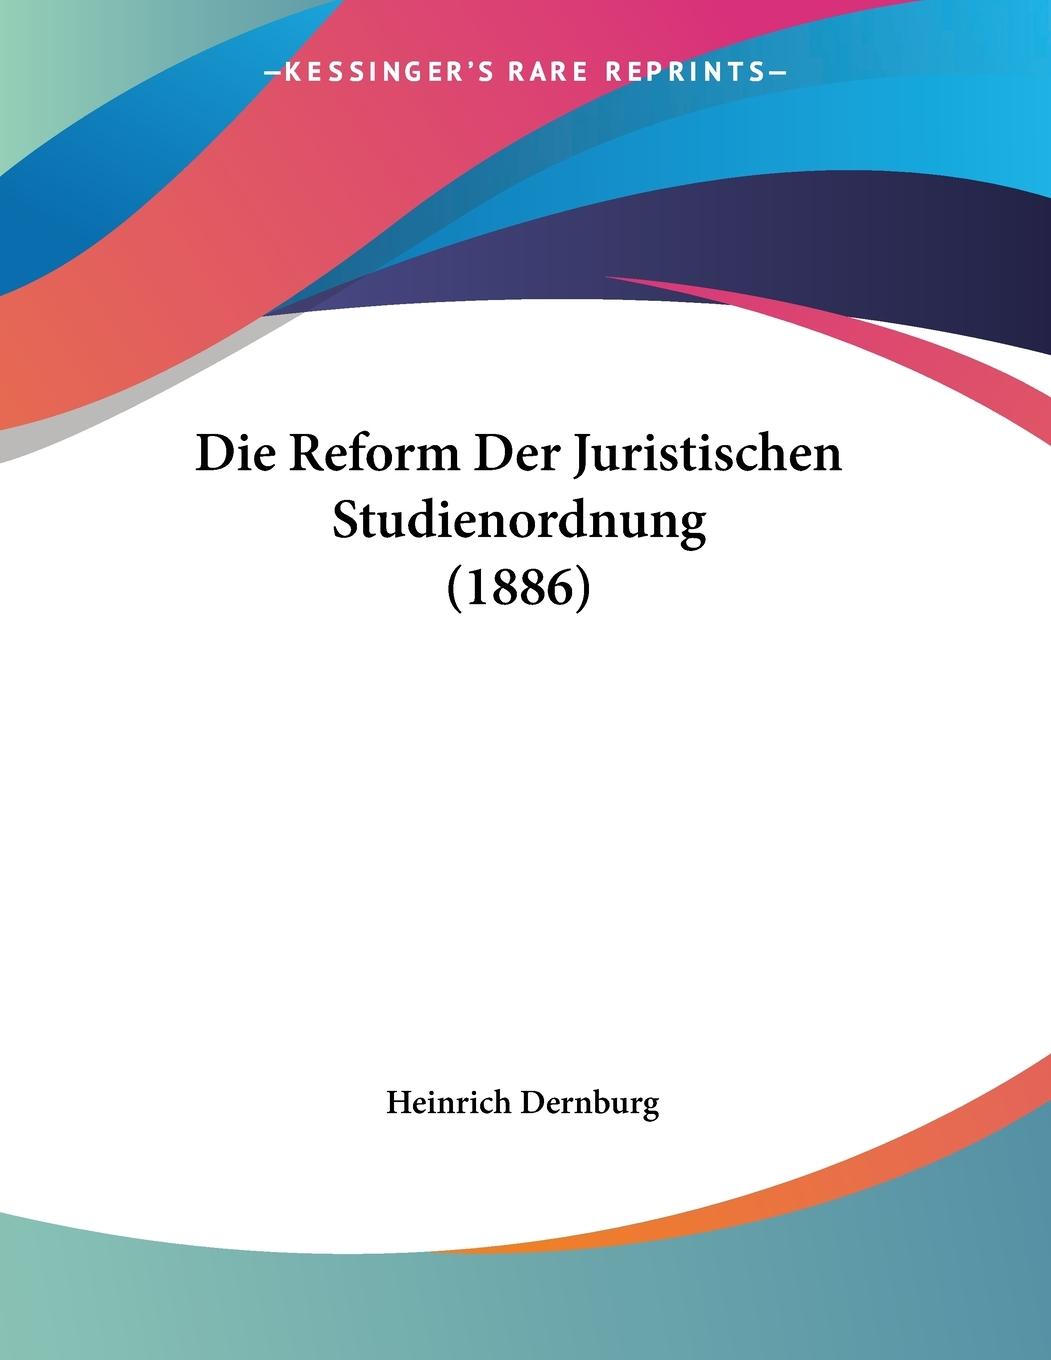 Die Reform Der Juristischen Studienordnung (1886) - Dernburg, Heinrich